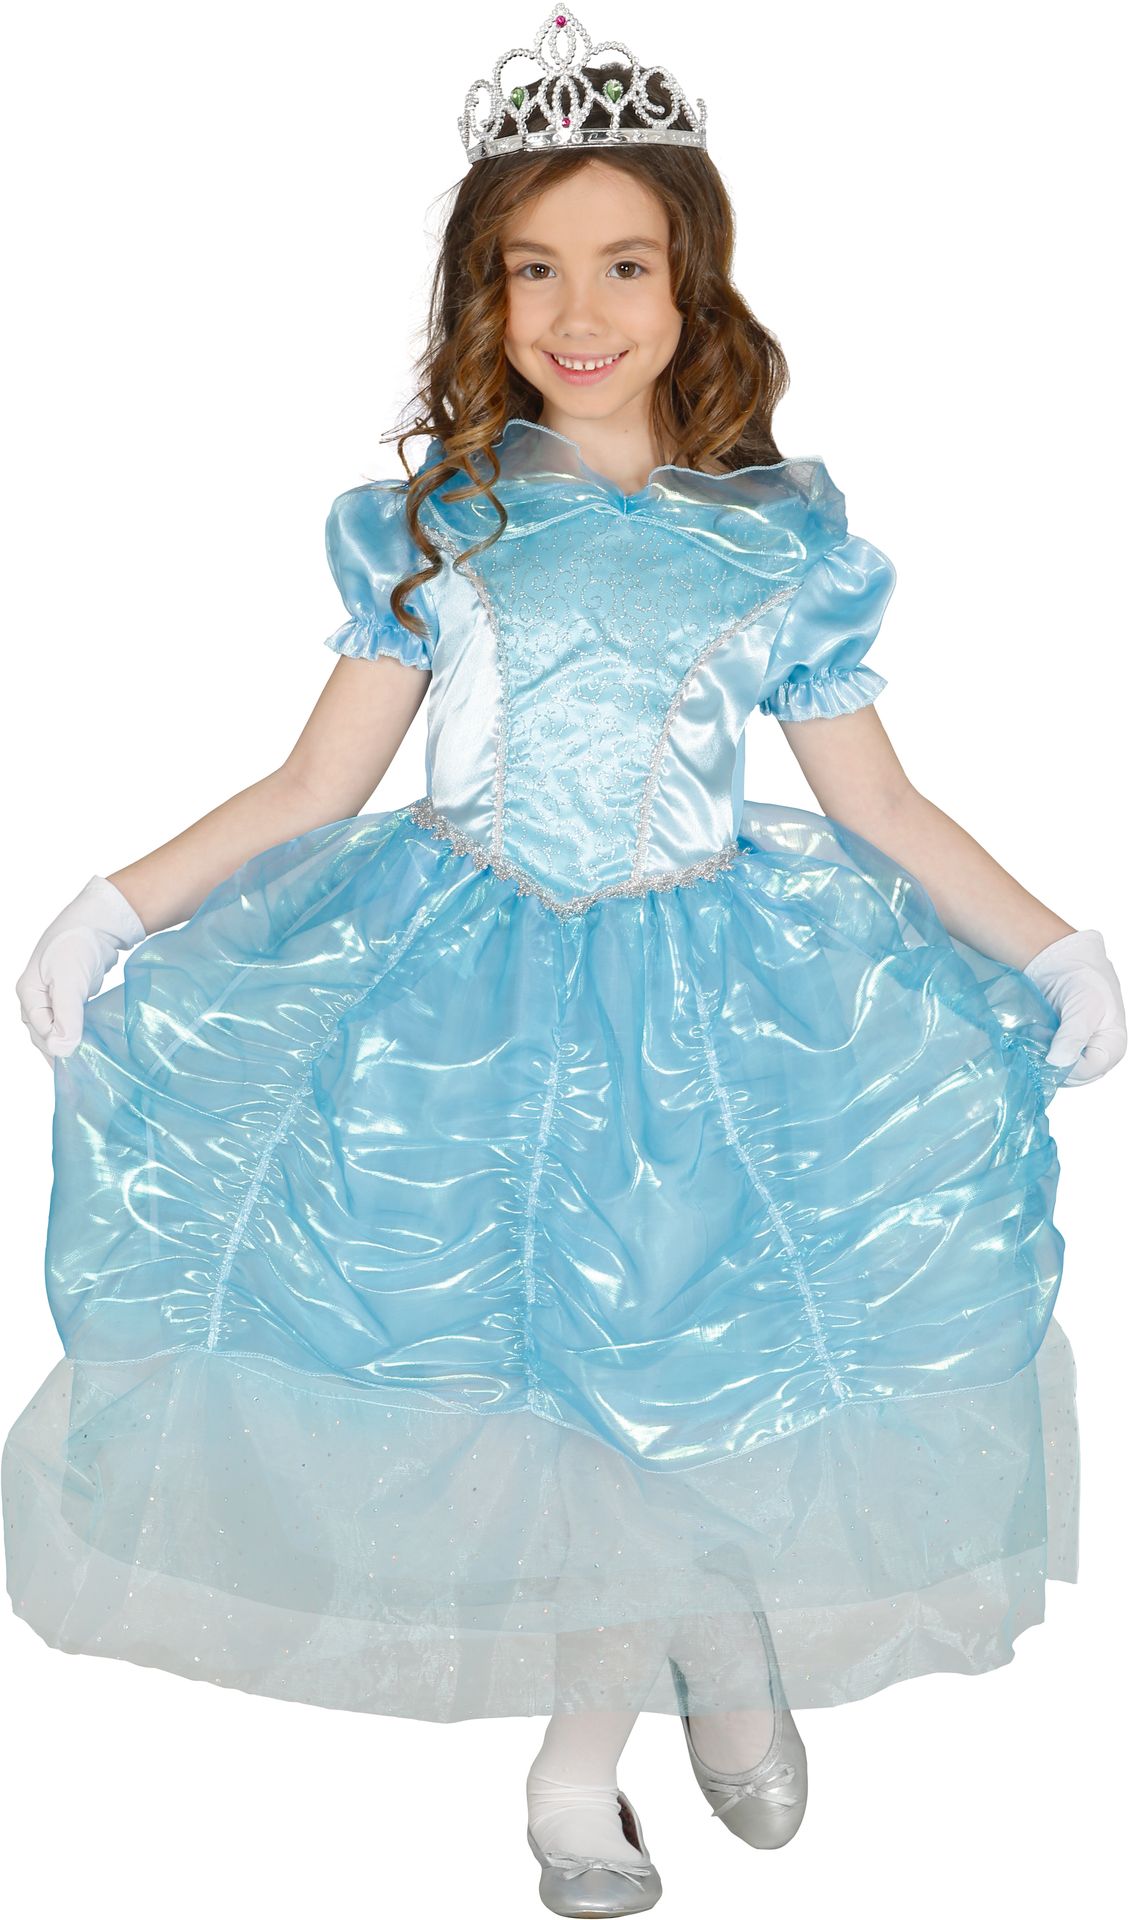 Blauwe prinses jurk kind